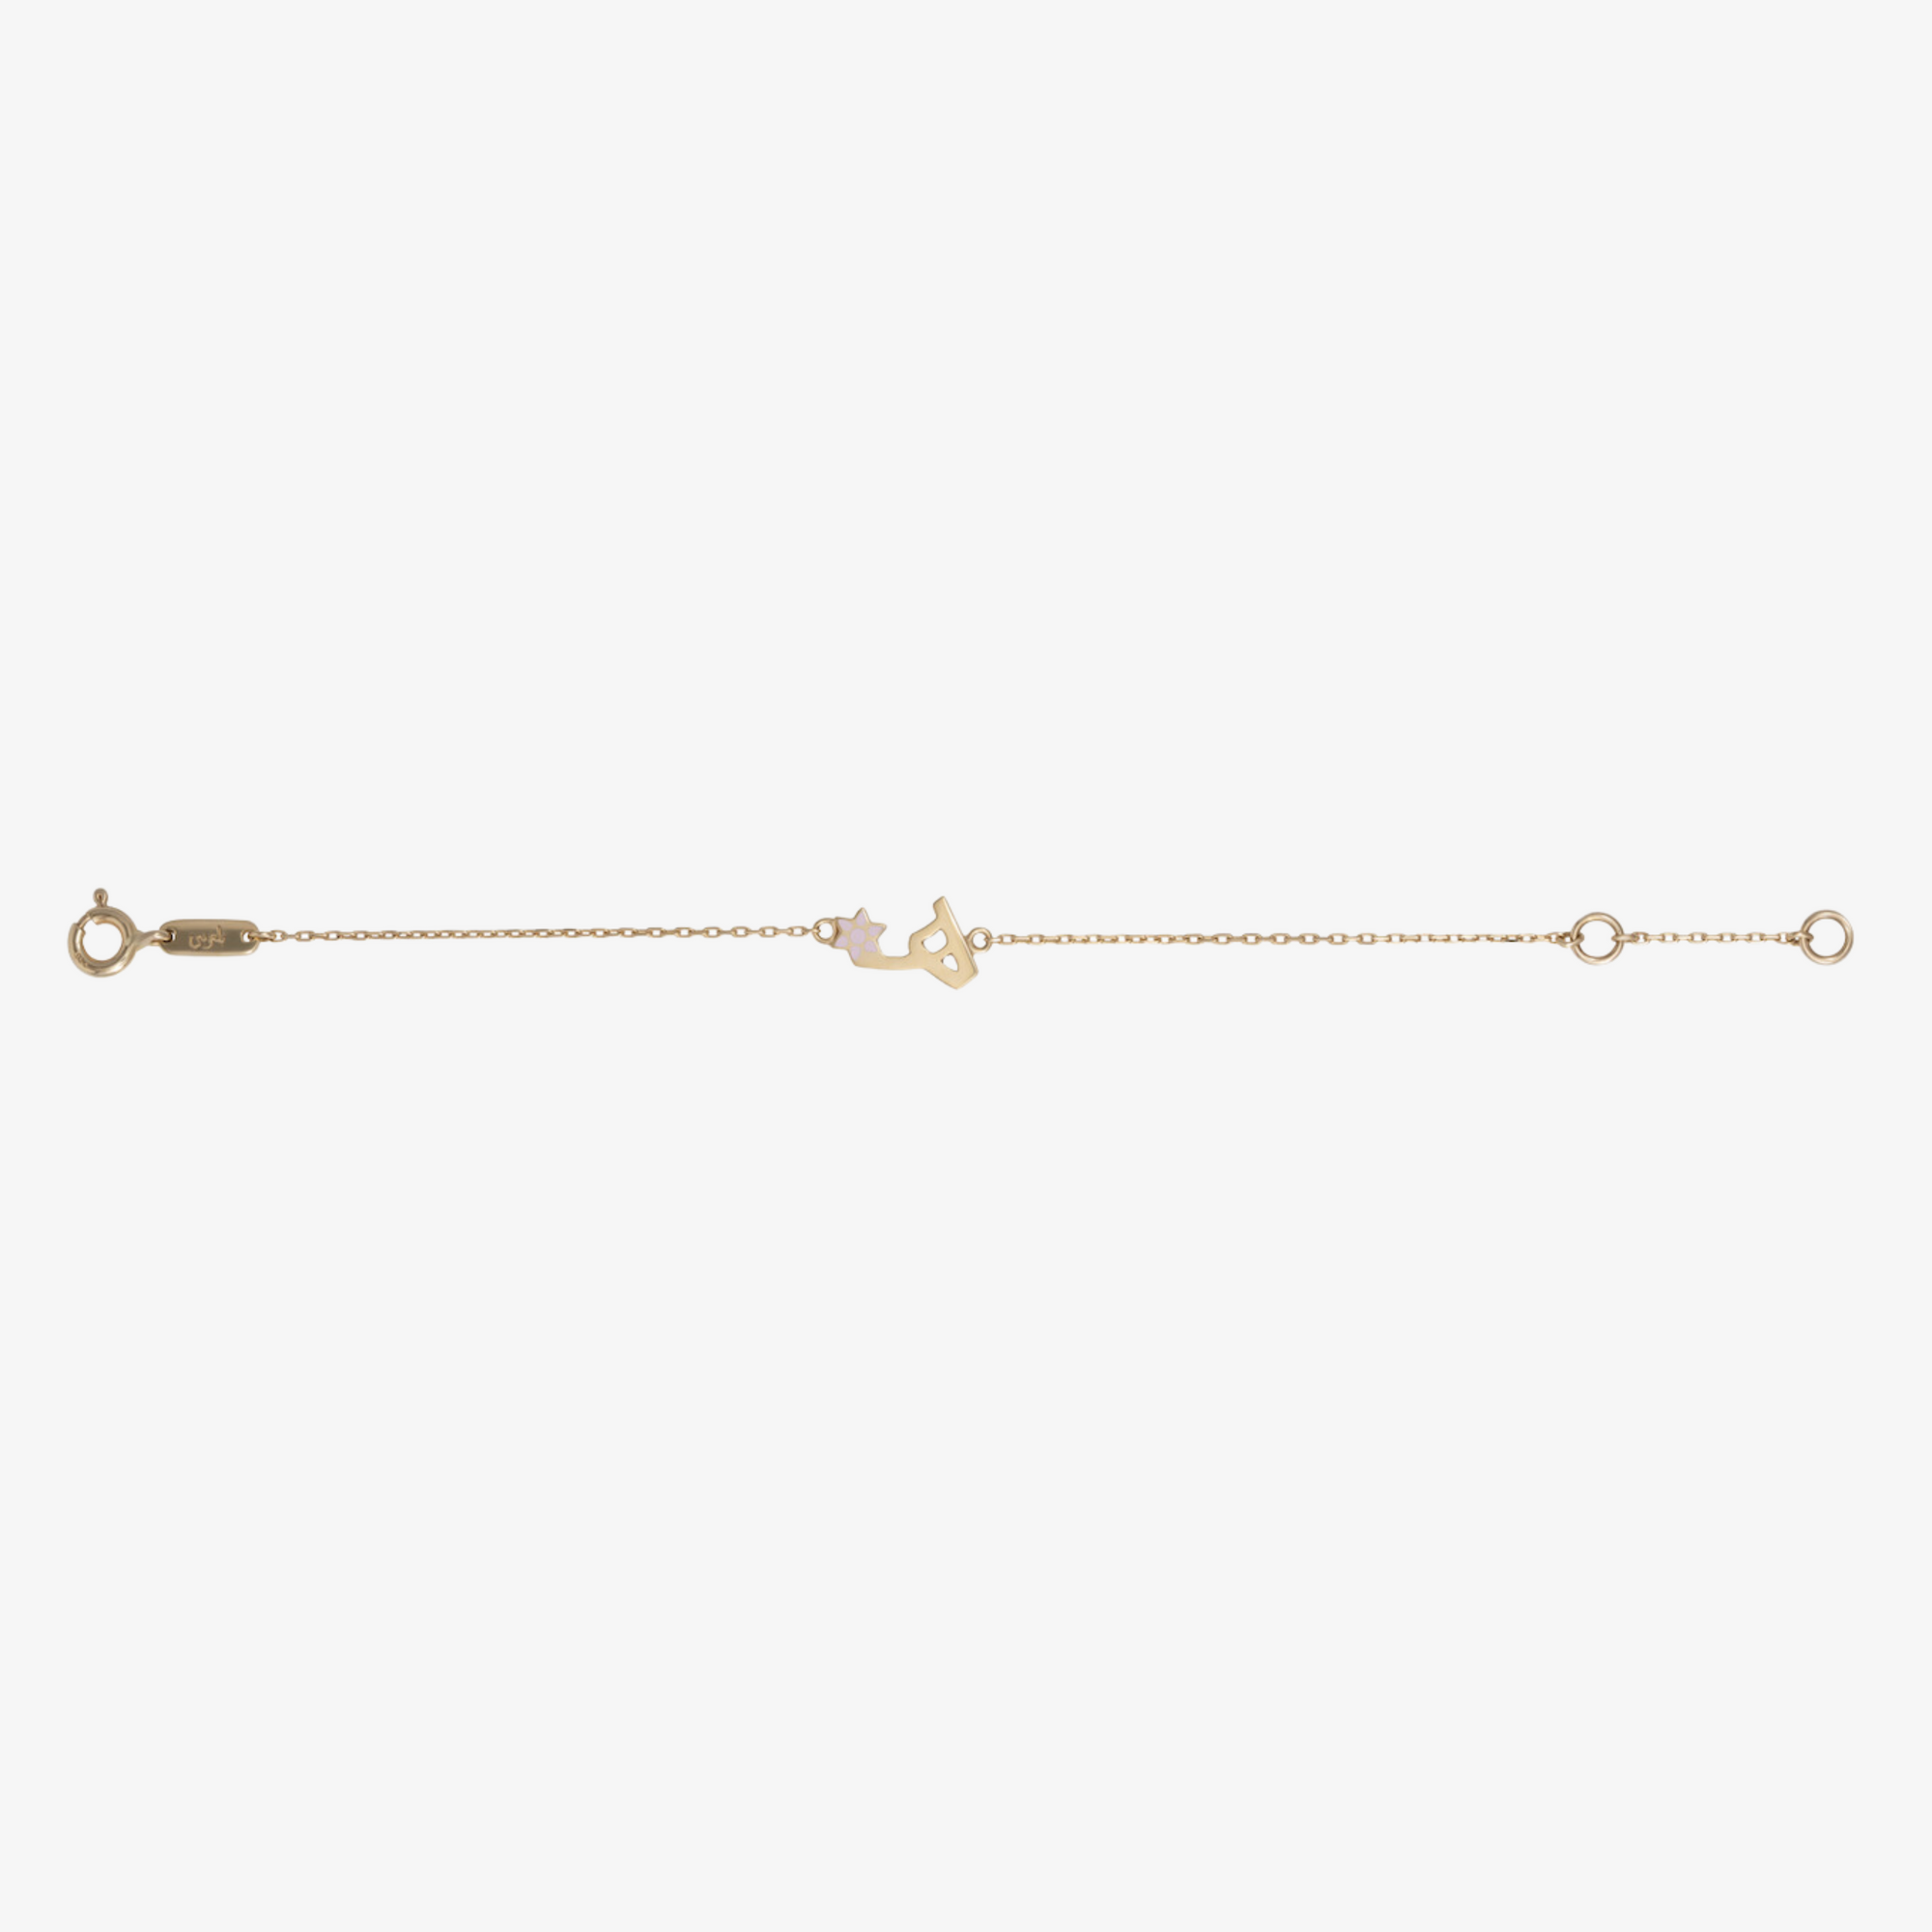 TINY BLING - 18K Gold & Enamel Letter Bracelet